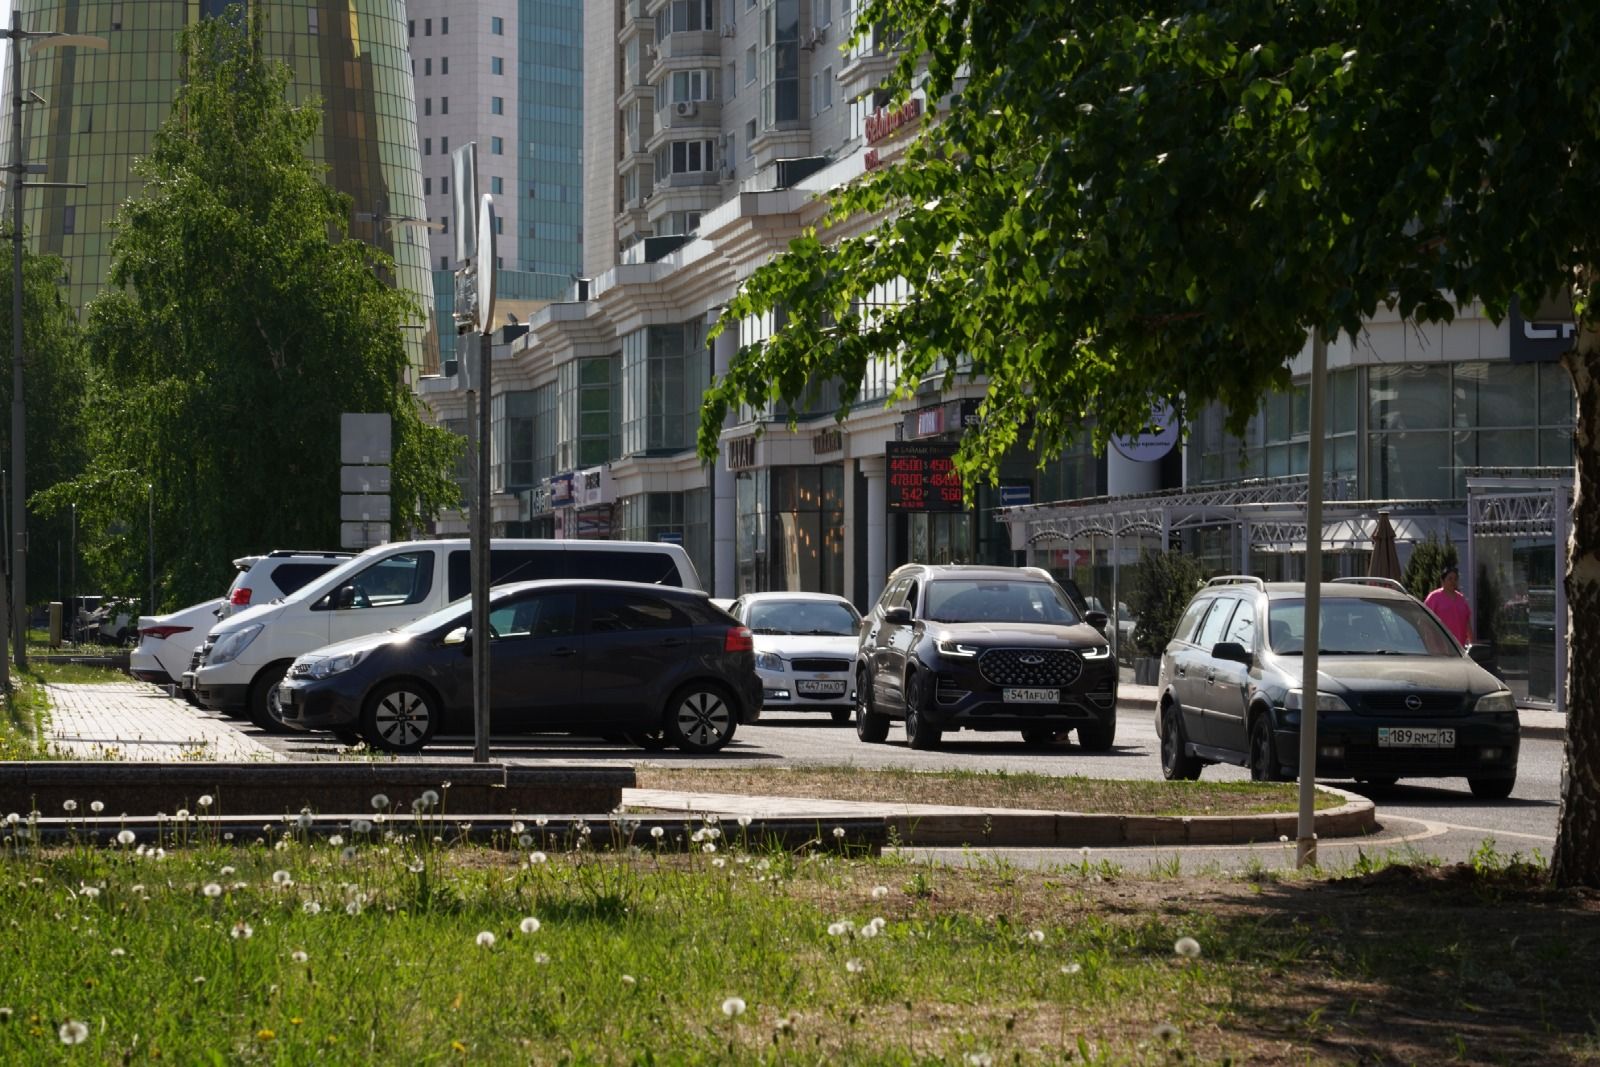 Ұзын, қысқа және атаусыз: Астанада қандай көшелер бар?